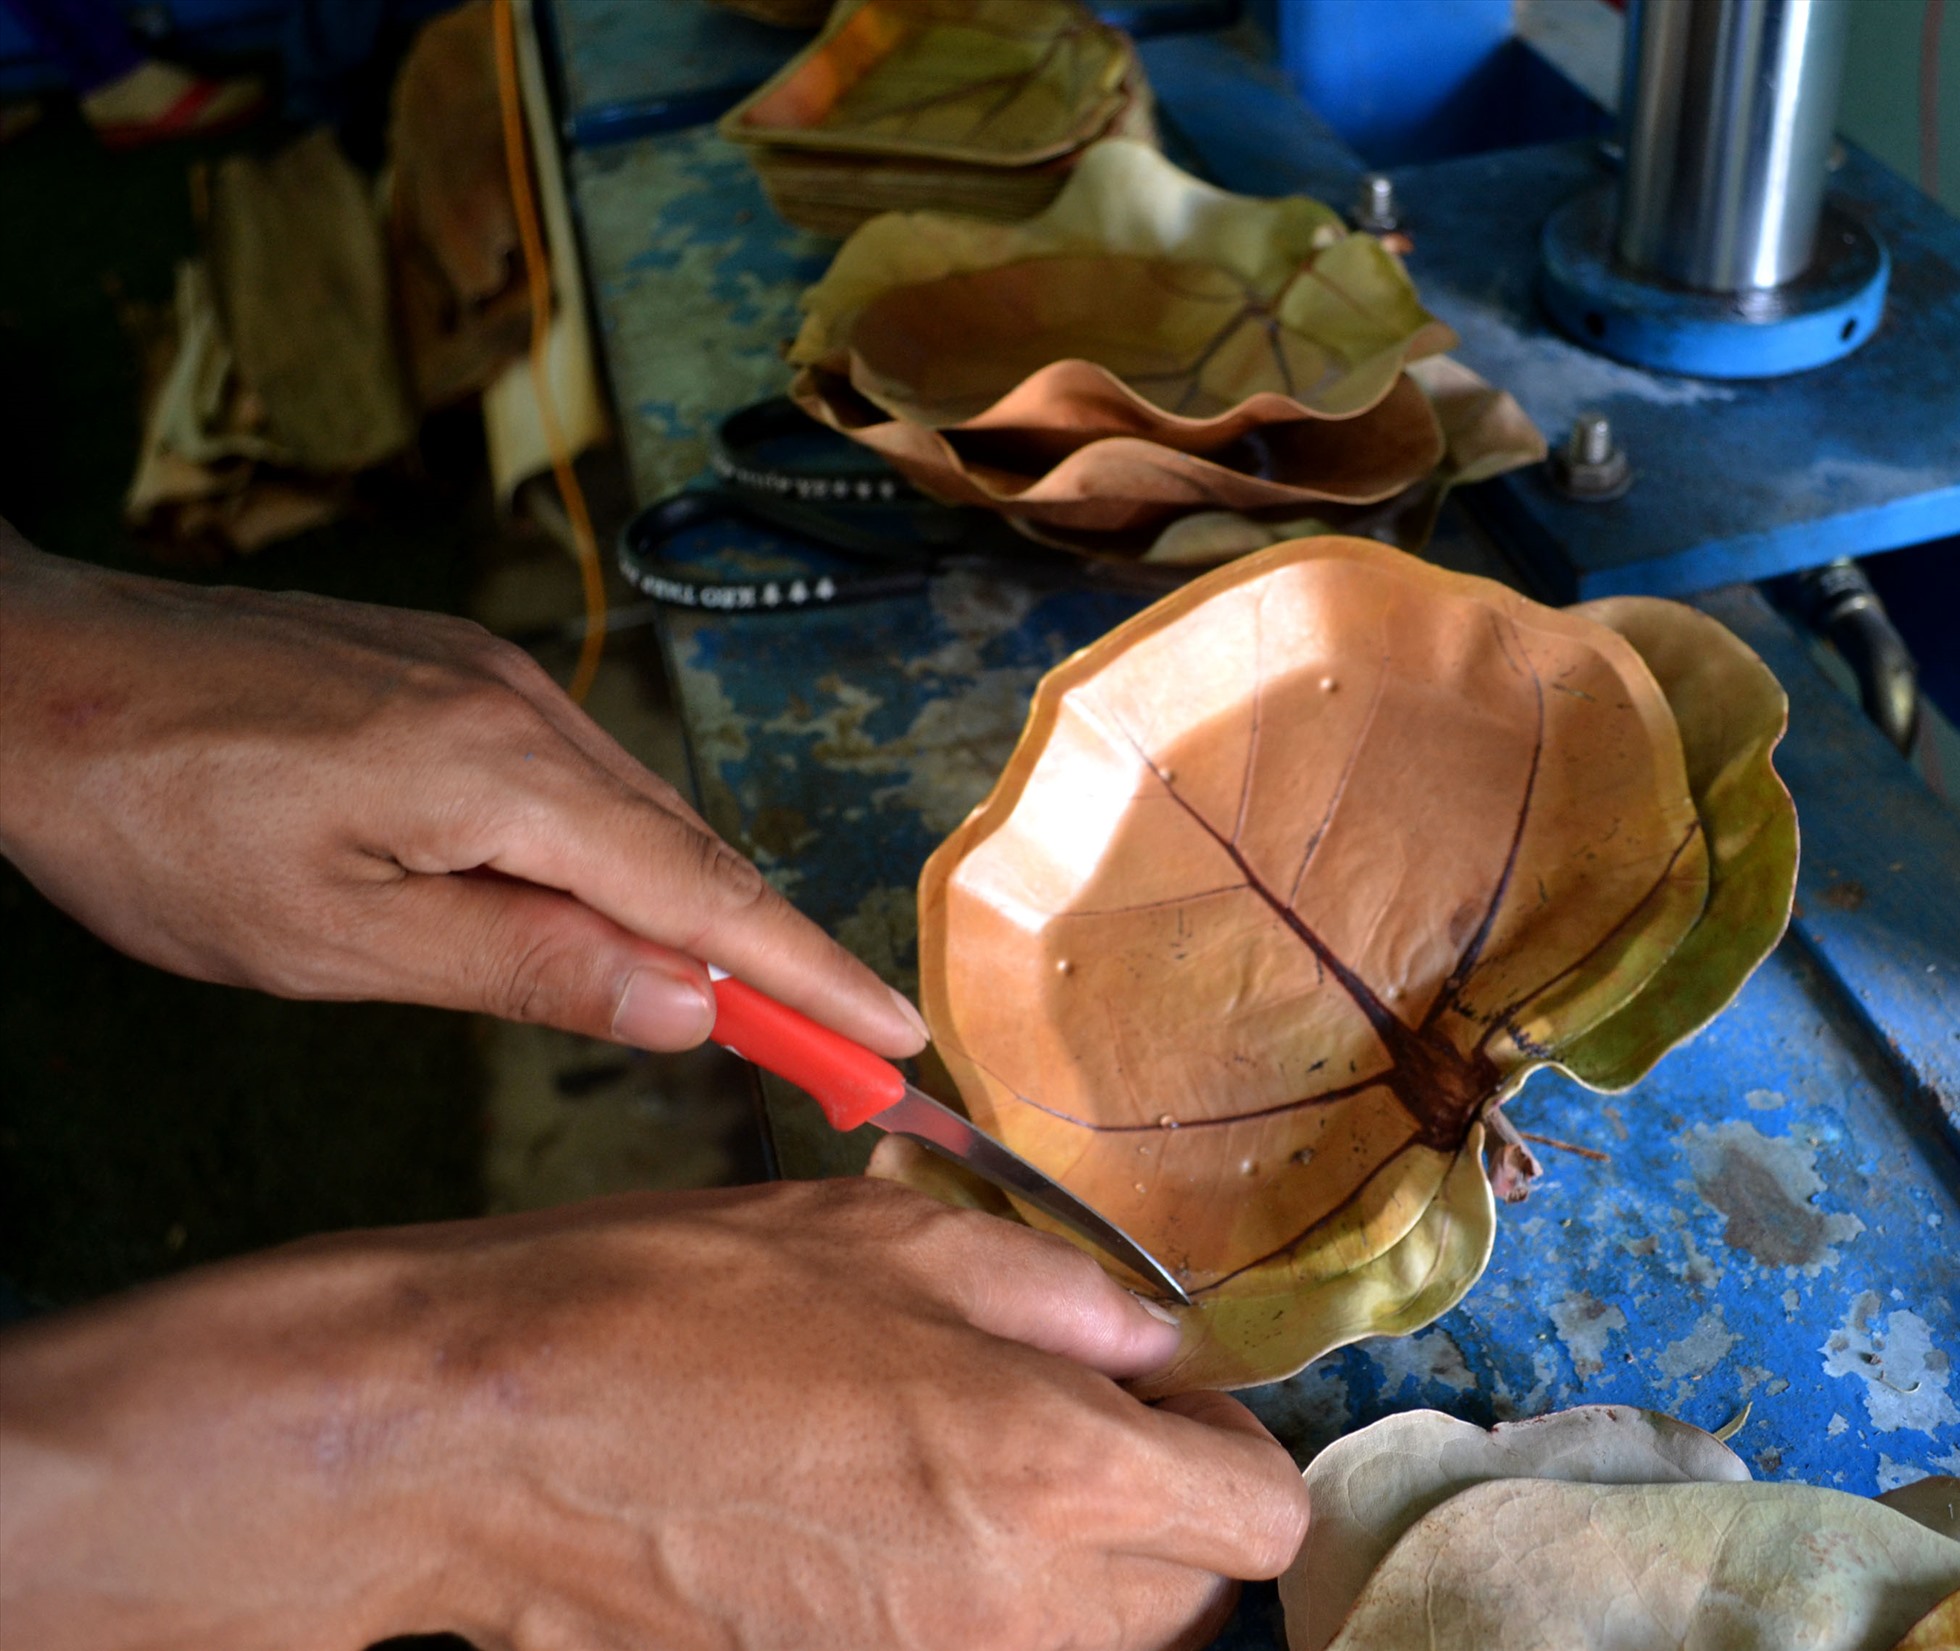 Lá tra sau khi được ép nhiệt khoảng 30 giây, người thợ mang ra cắt, tạo thành chiếc dĩa lá tra hình trái tim.